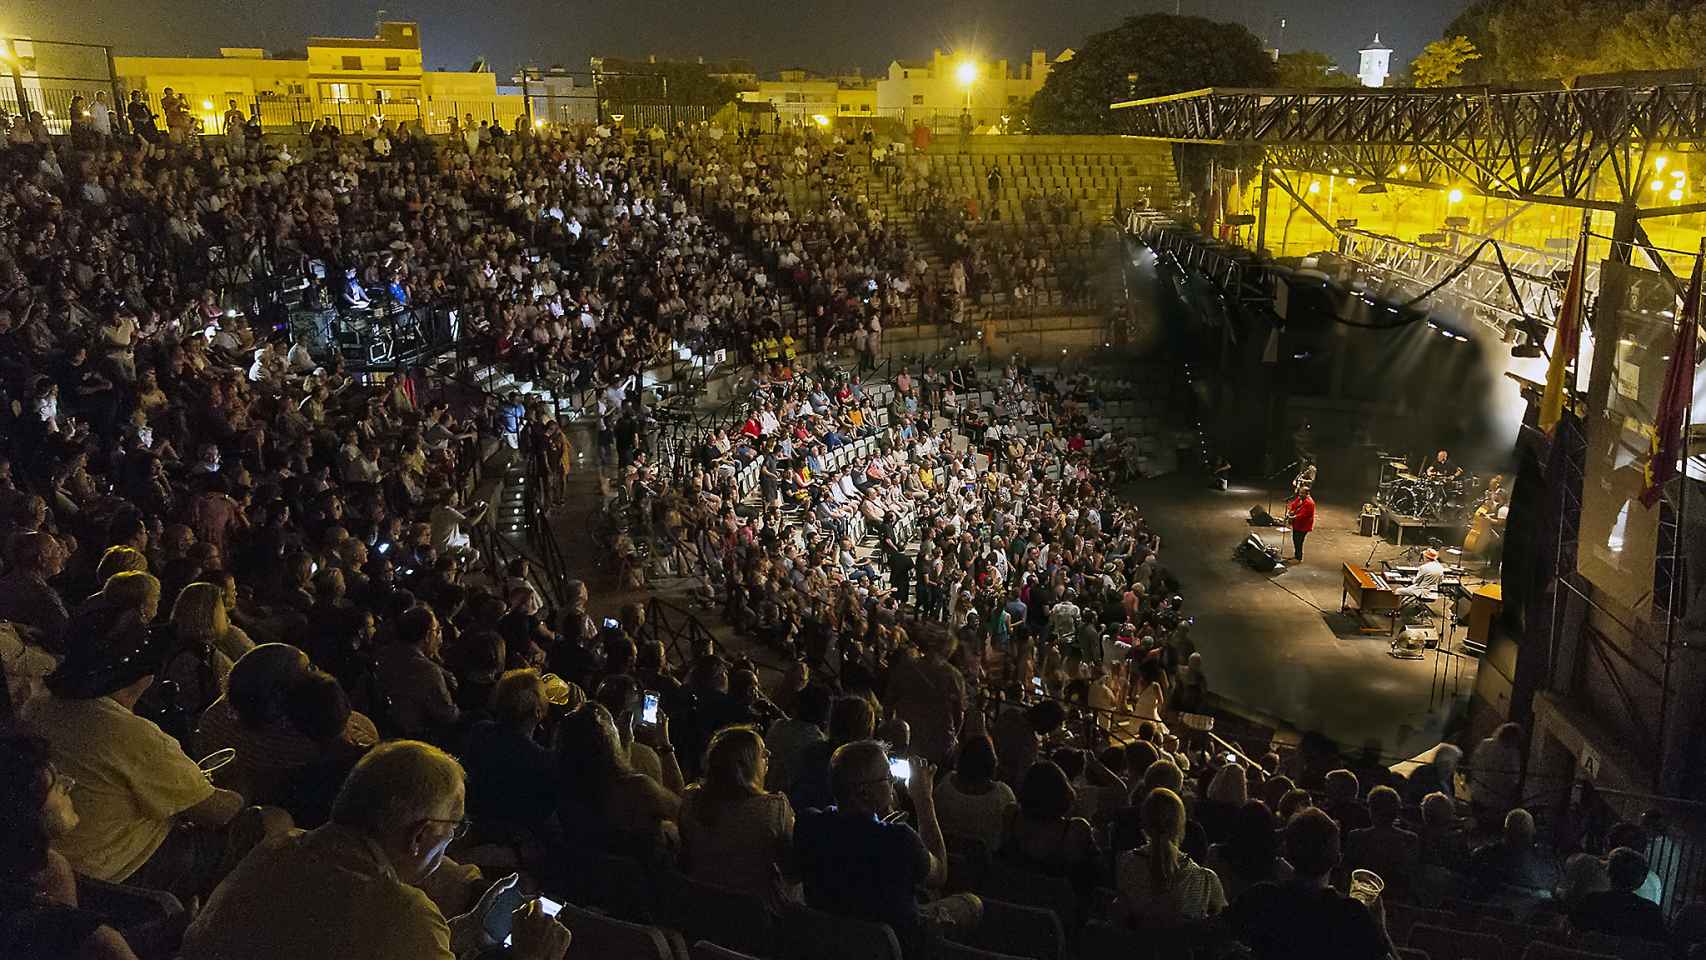 El increíble ambiente que se respira en los conciertos del festival que tienen lugar en el auditorio al aire libre del Parque Almansa.